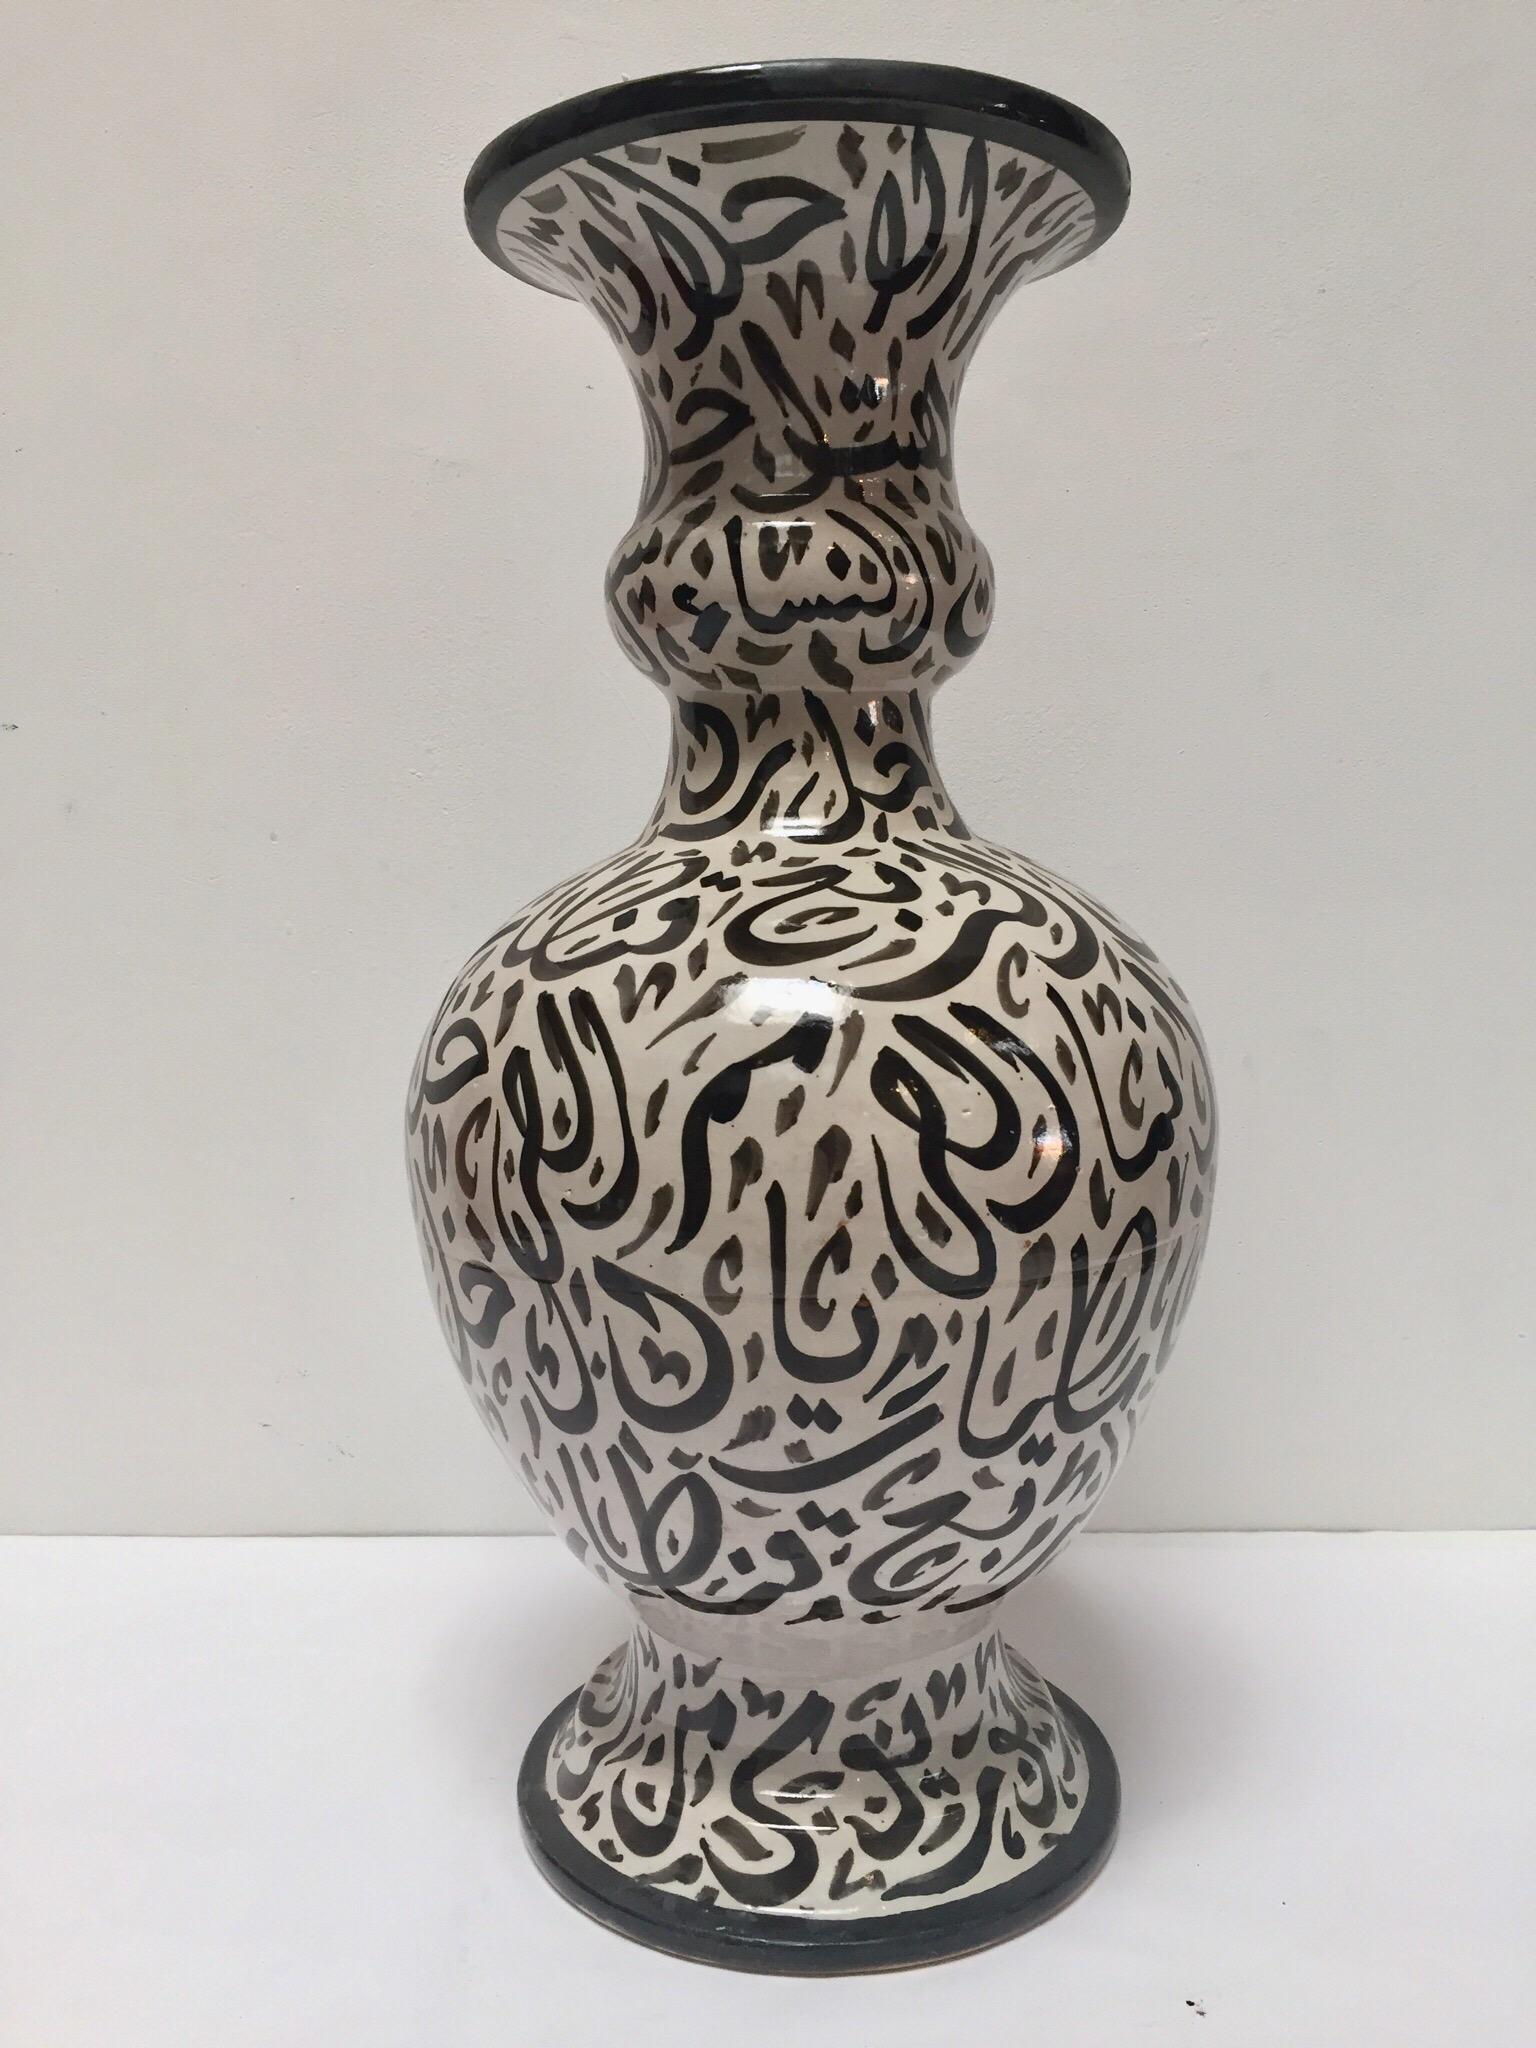 Islamic Large Moorish Glazed Ceramic Vase with Arabic Calligraphy Black Writing Fez For Sale